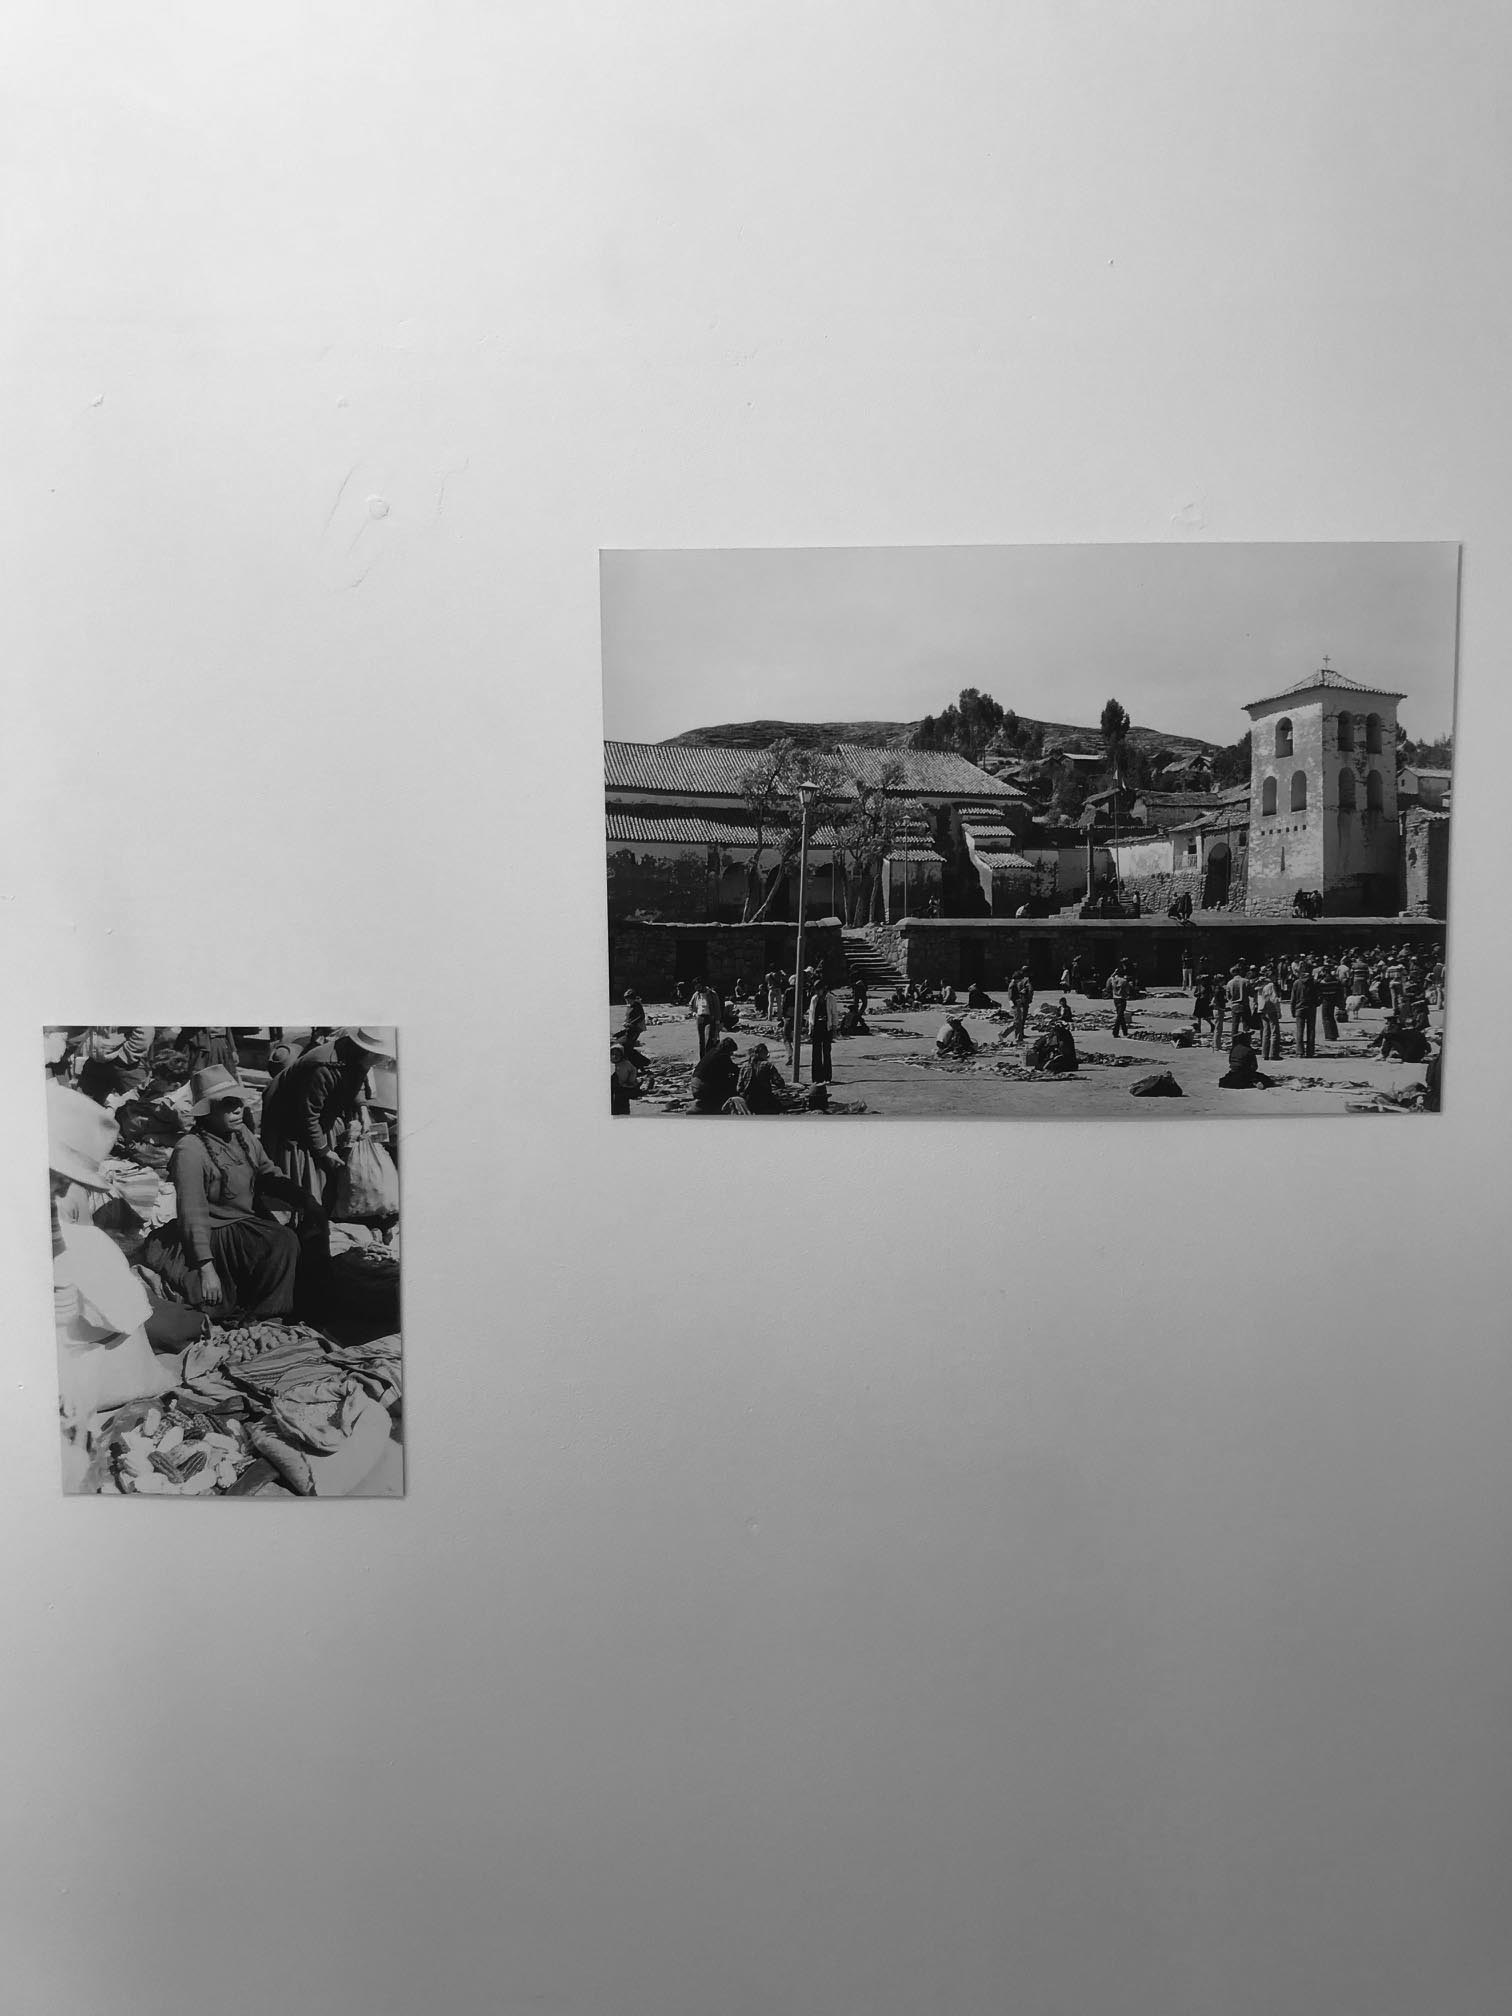 Installment #9: Barbara Dalheimer, DER RUHIGE BLICK - Peruanische Architektur und Landschaft (Fotografien aus den Jahren 1978 - 1981)